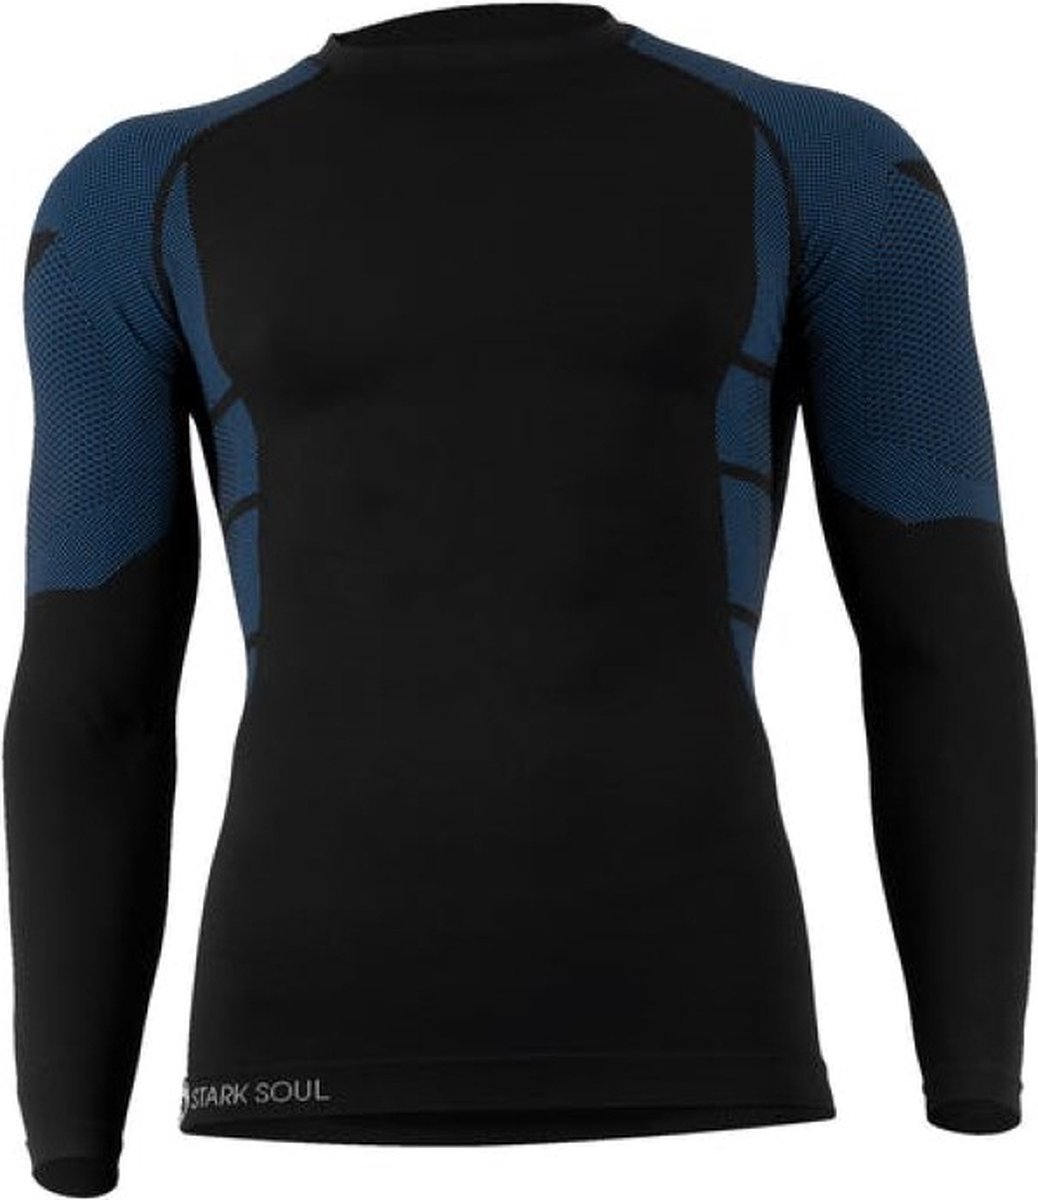 Heren thermoshirt met lange mouwen - Blauw/Zwart - Maat L/XL